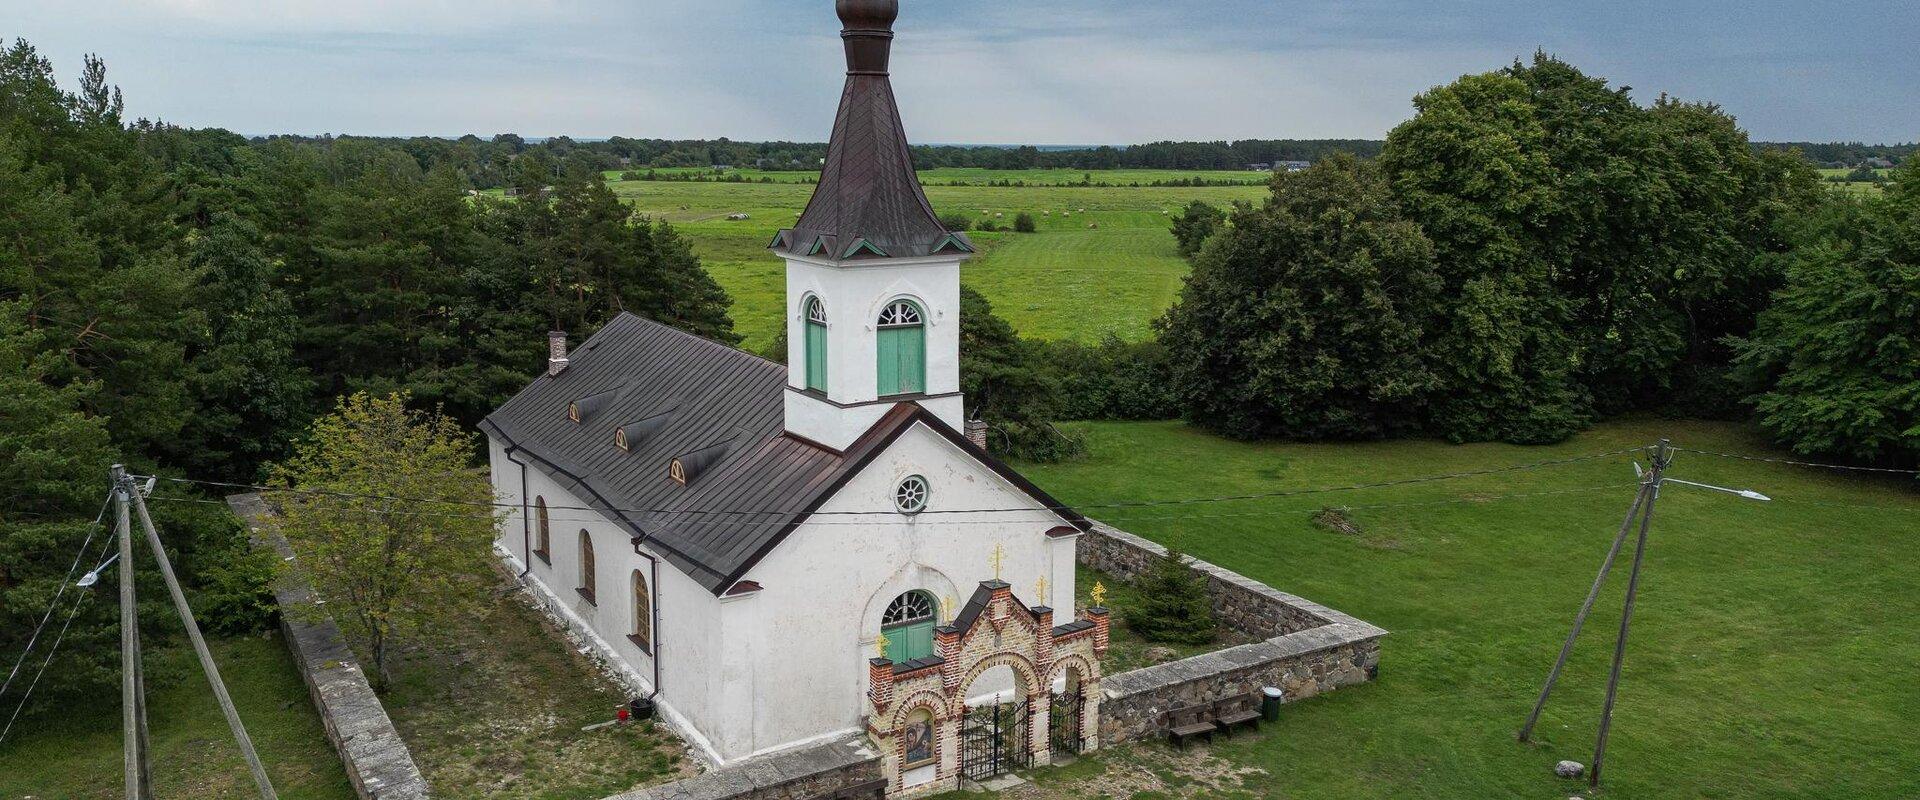 Die Kirche wurde im Jahr 1784 gebaut und ist eine der wenigen orthodoxen Kirchen, die aus einem lutherischen Sakralgebäude entstanden sind. In den Jah